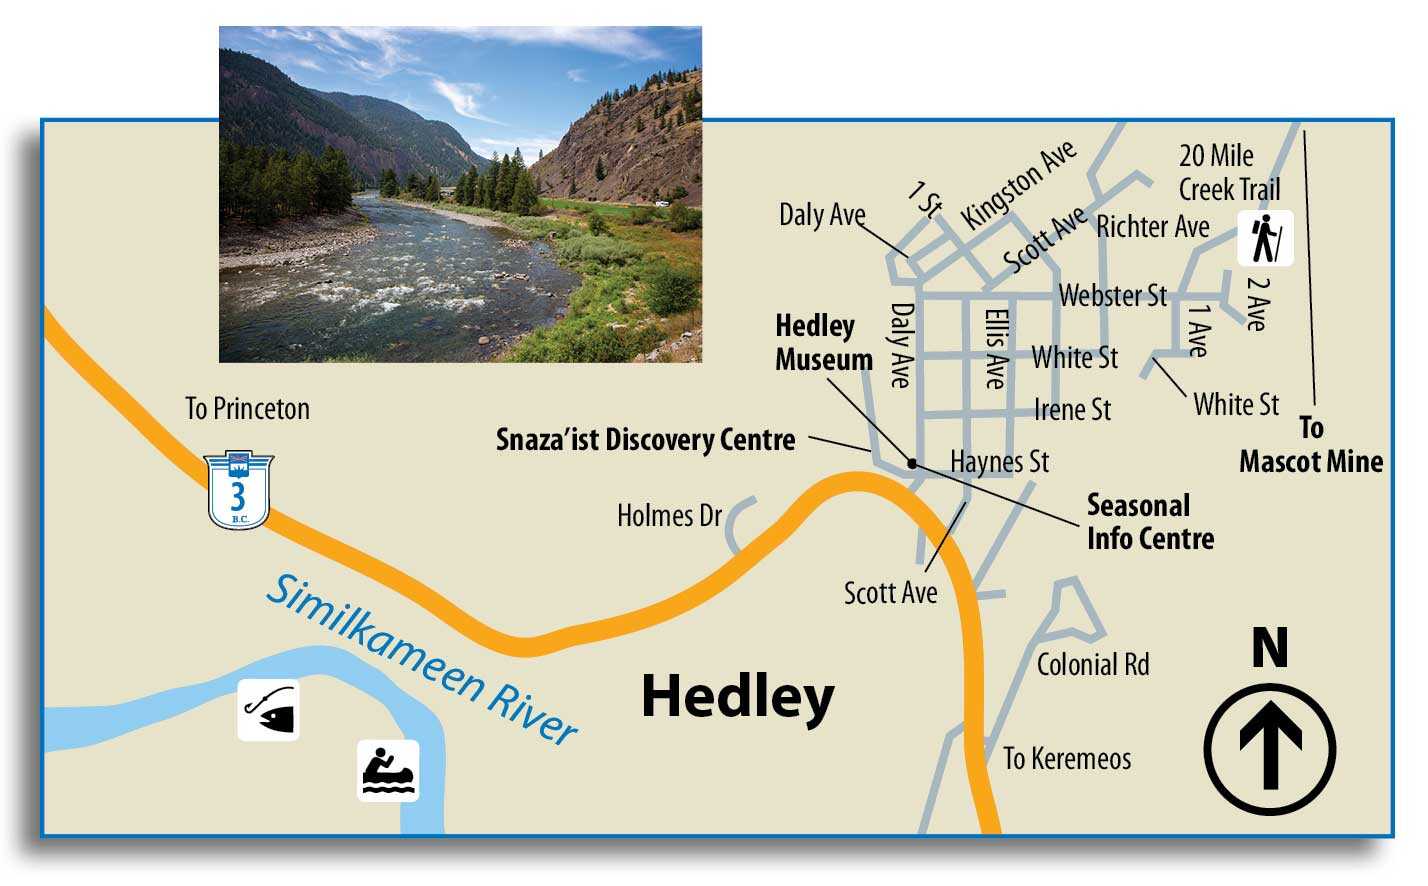 Hedley map